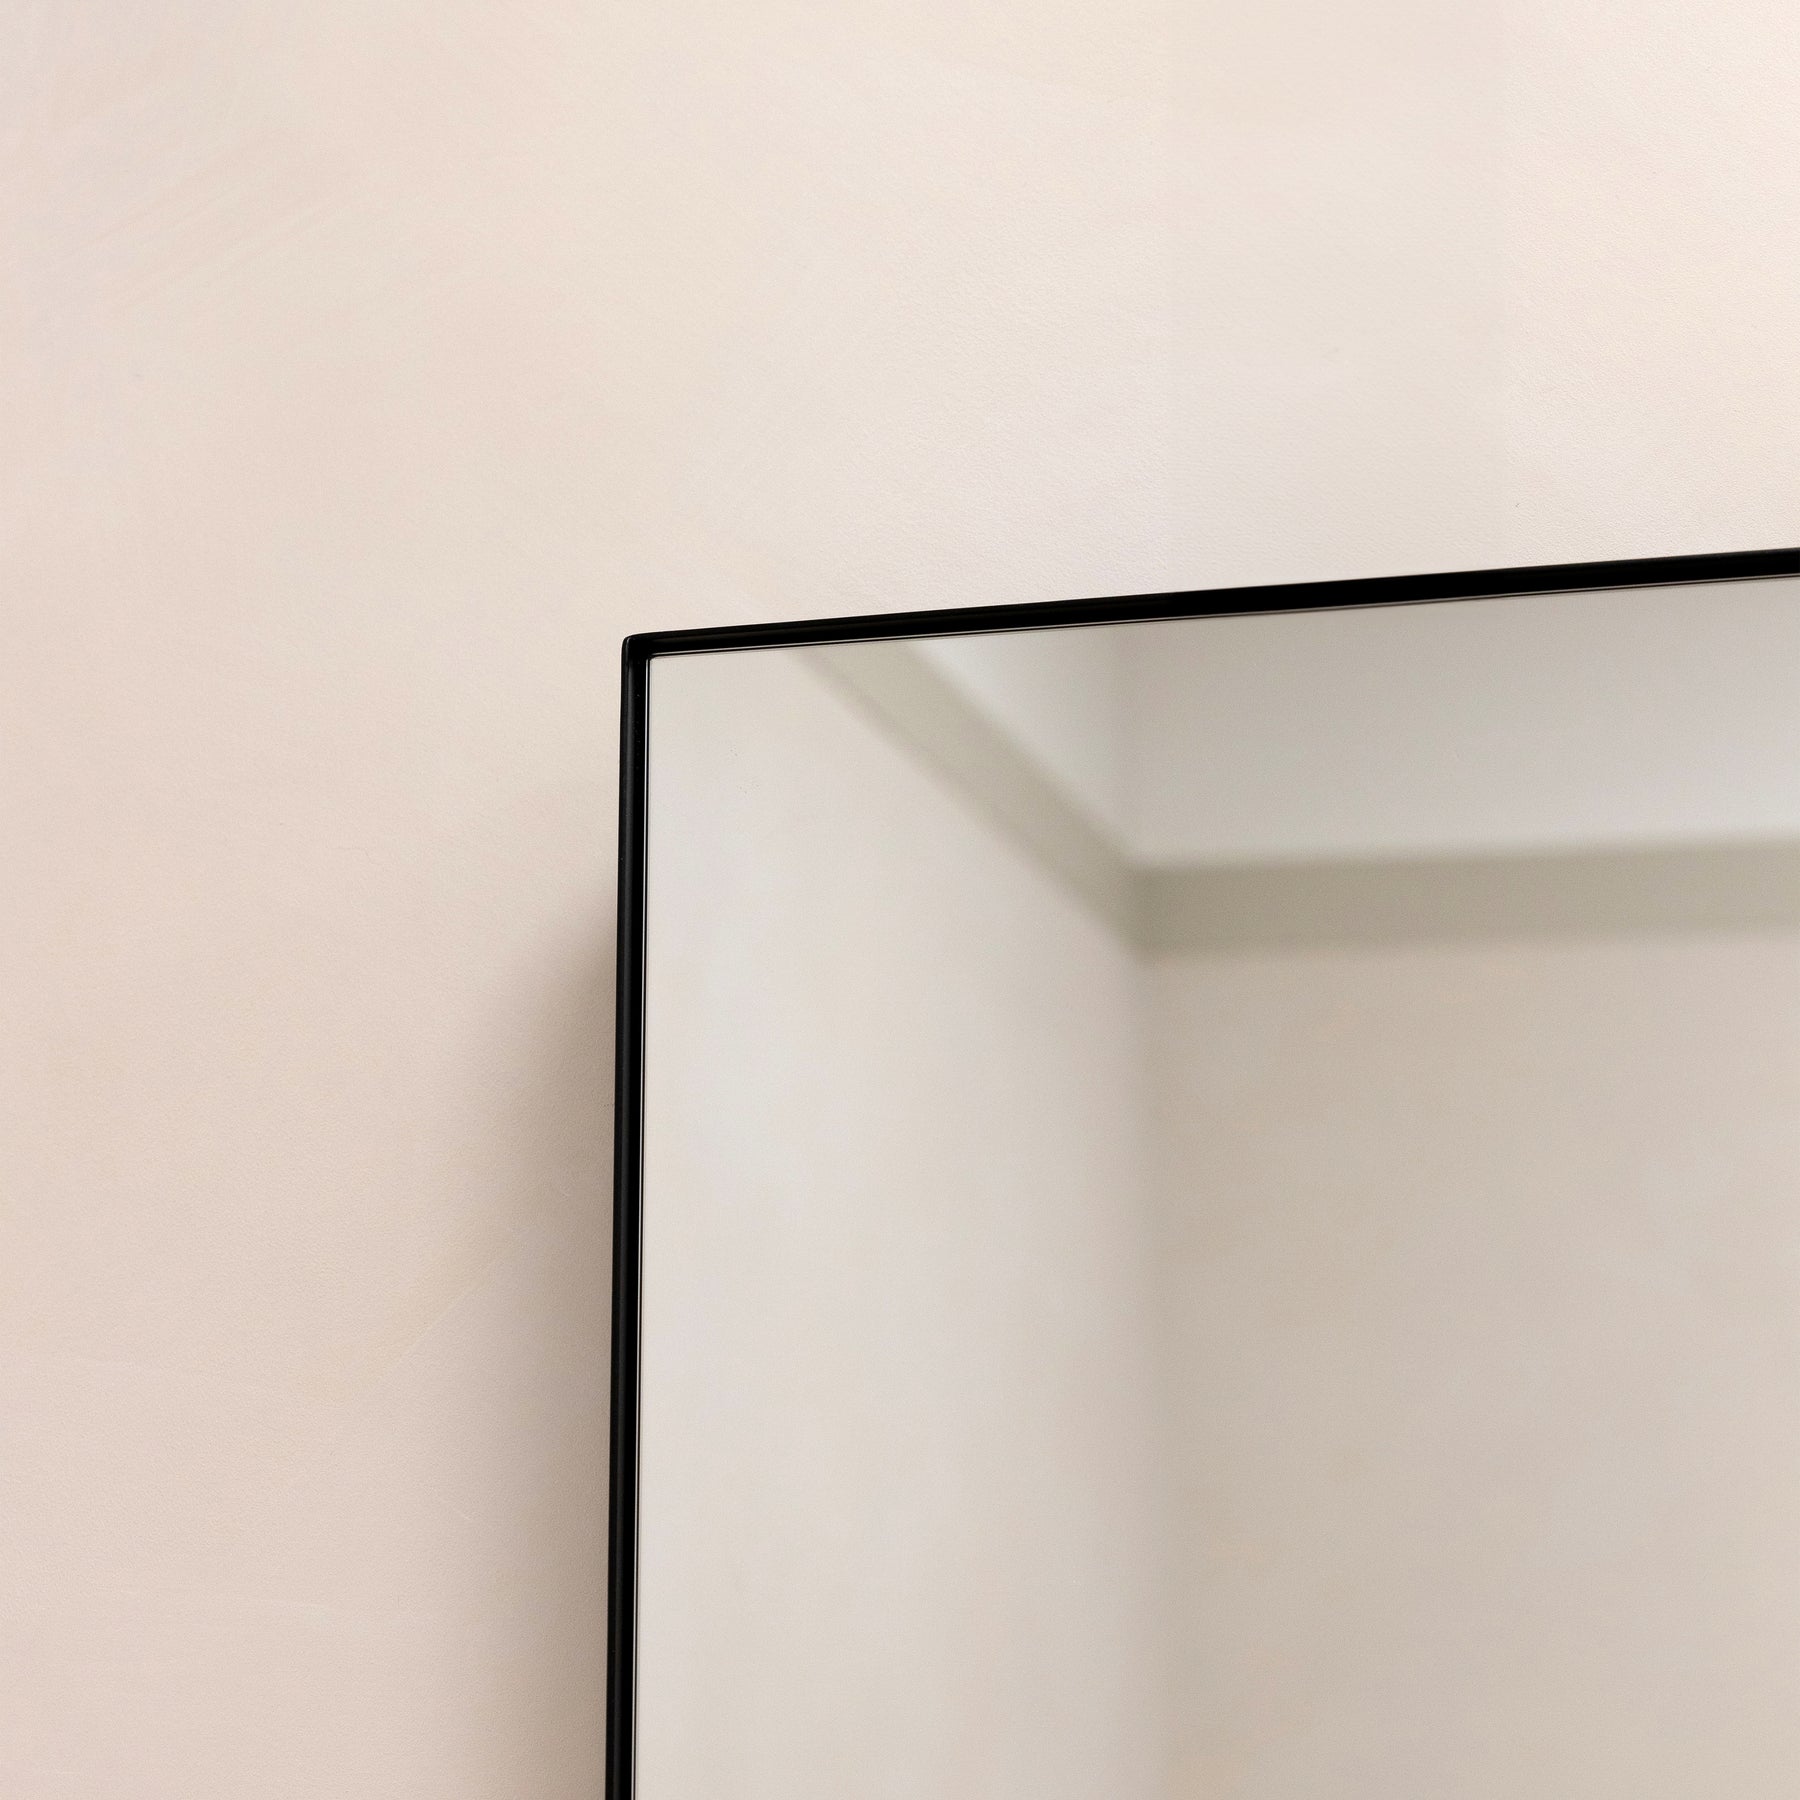 Alternate detail shot of Black Rectangular Metal Large Wall Mirror corner